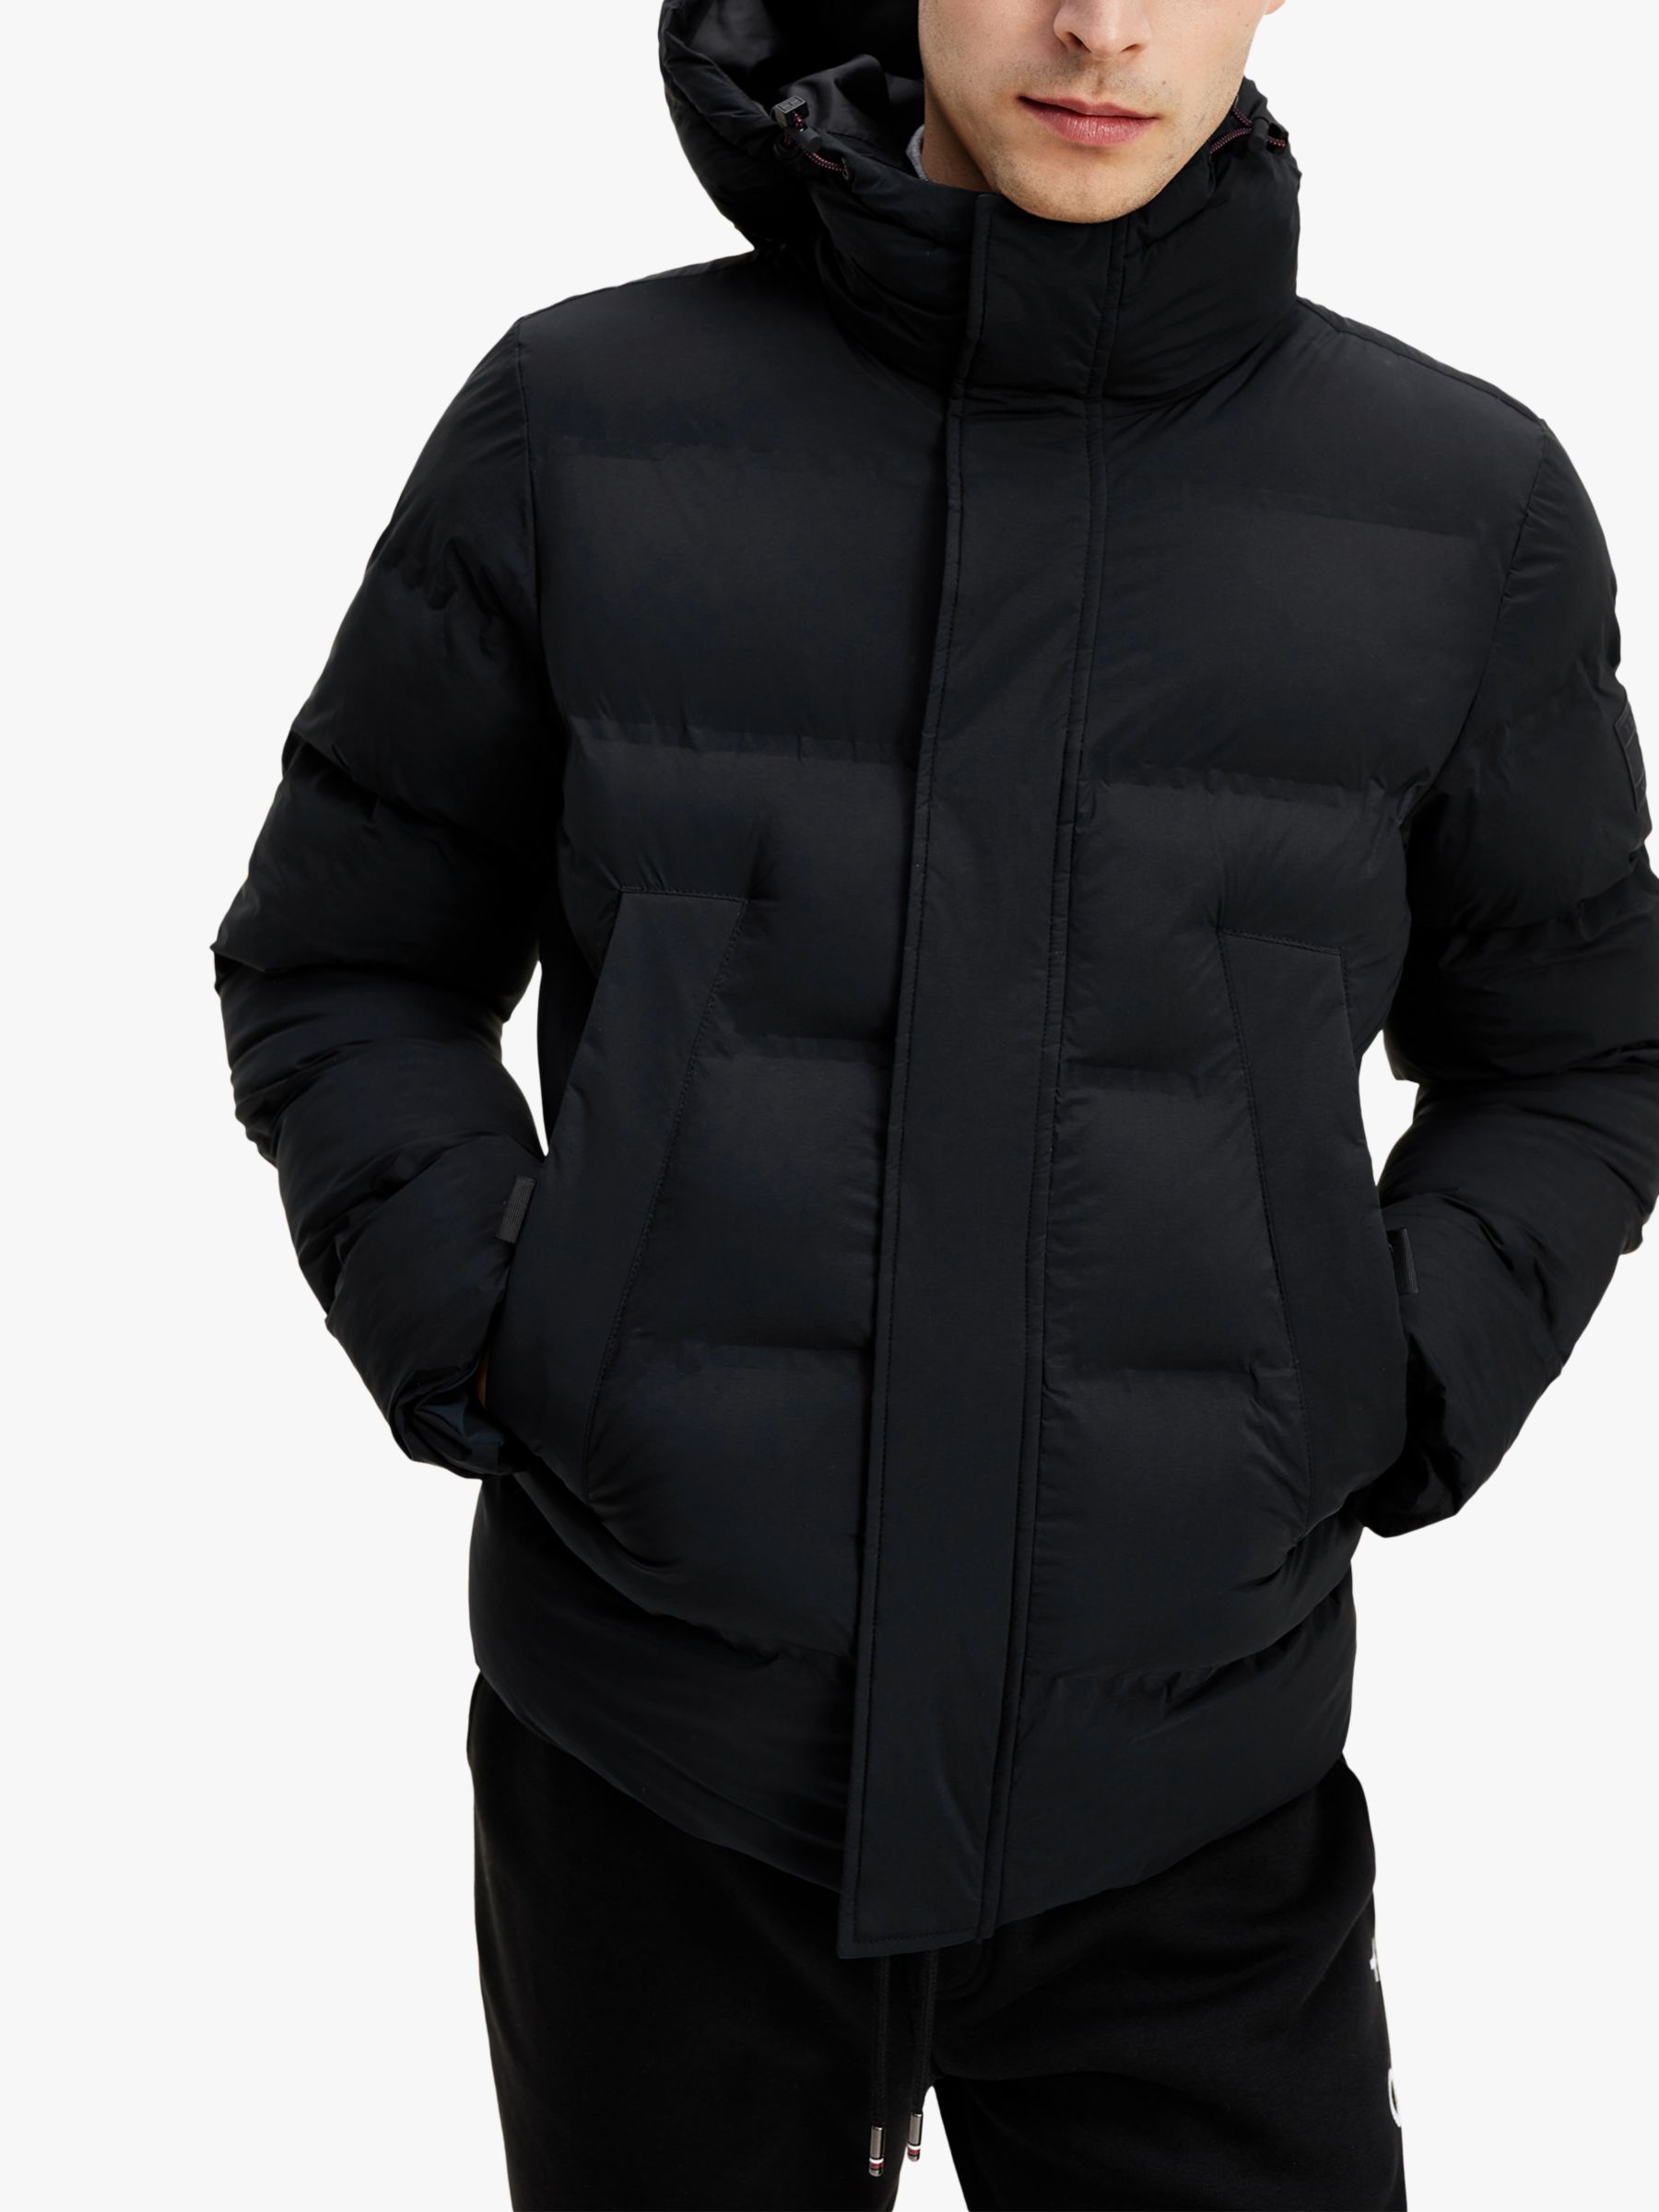 black hilfiger jacket